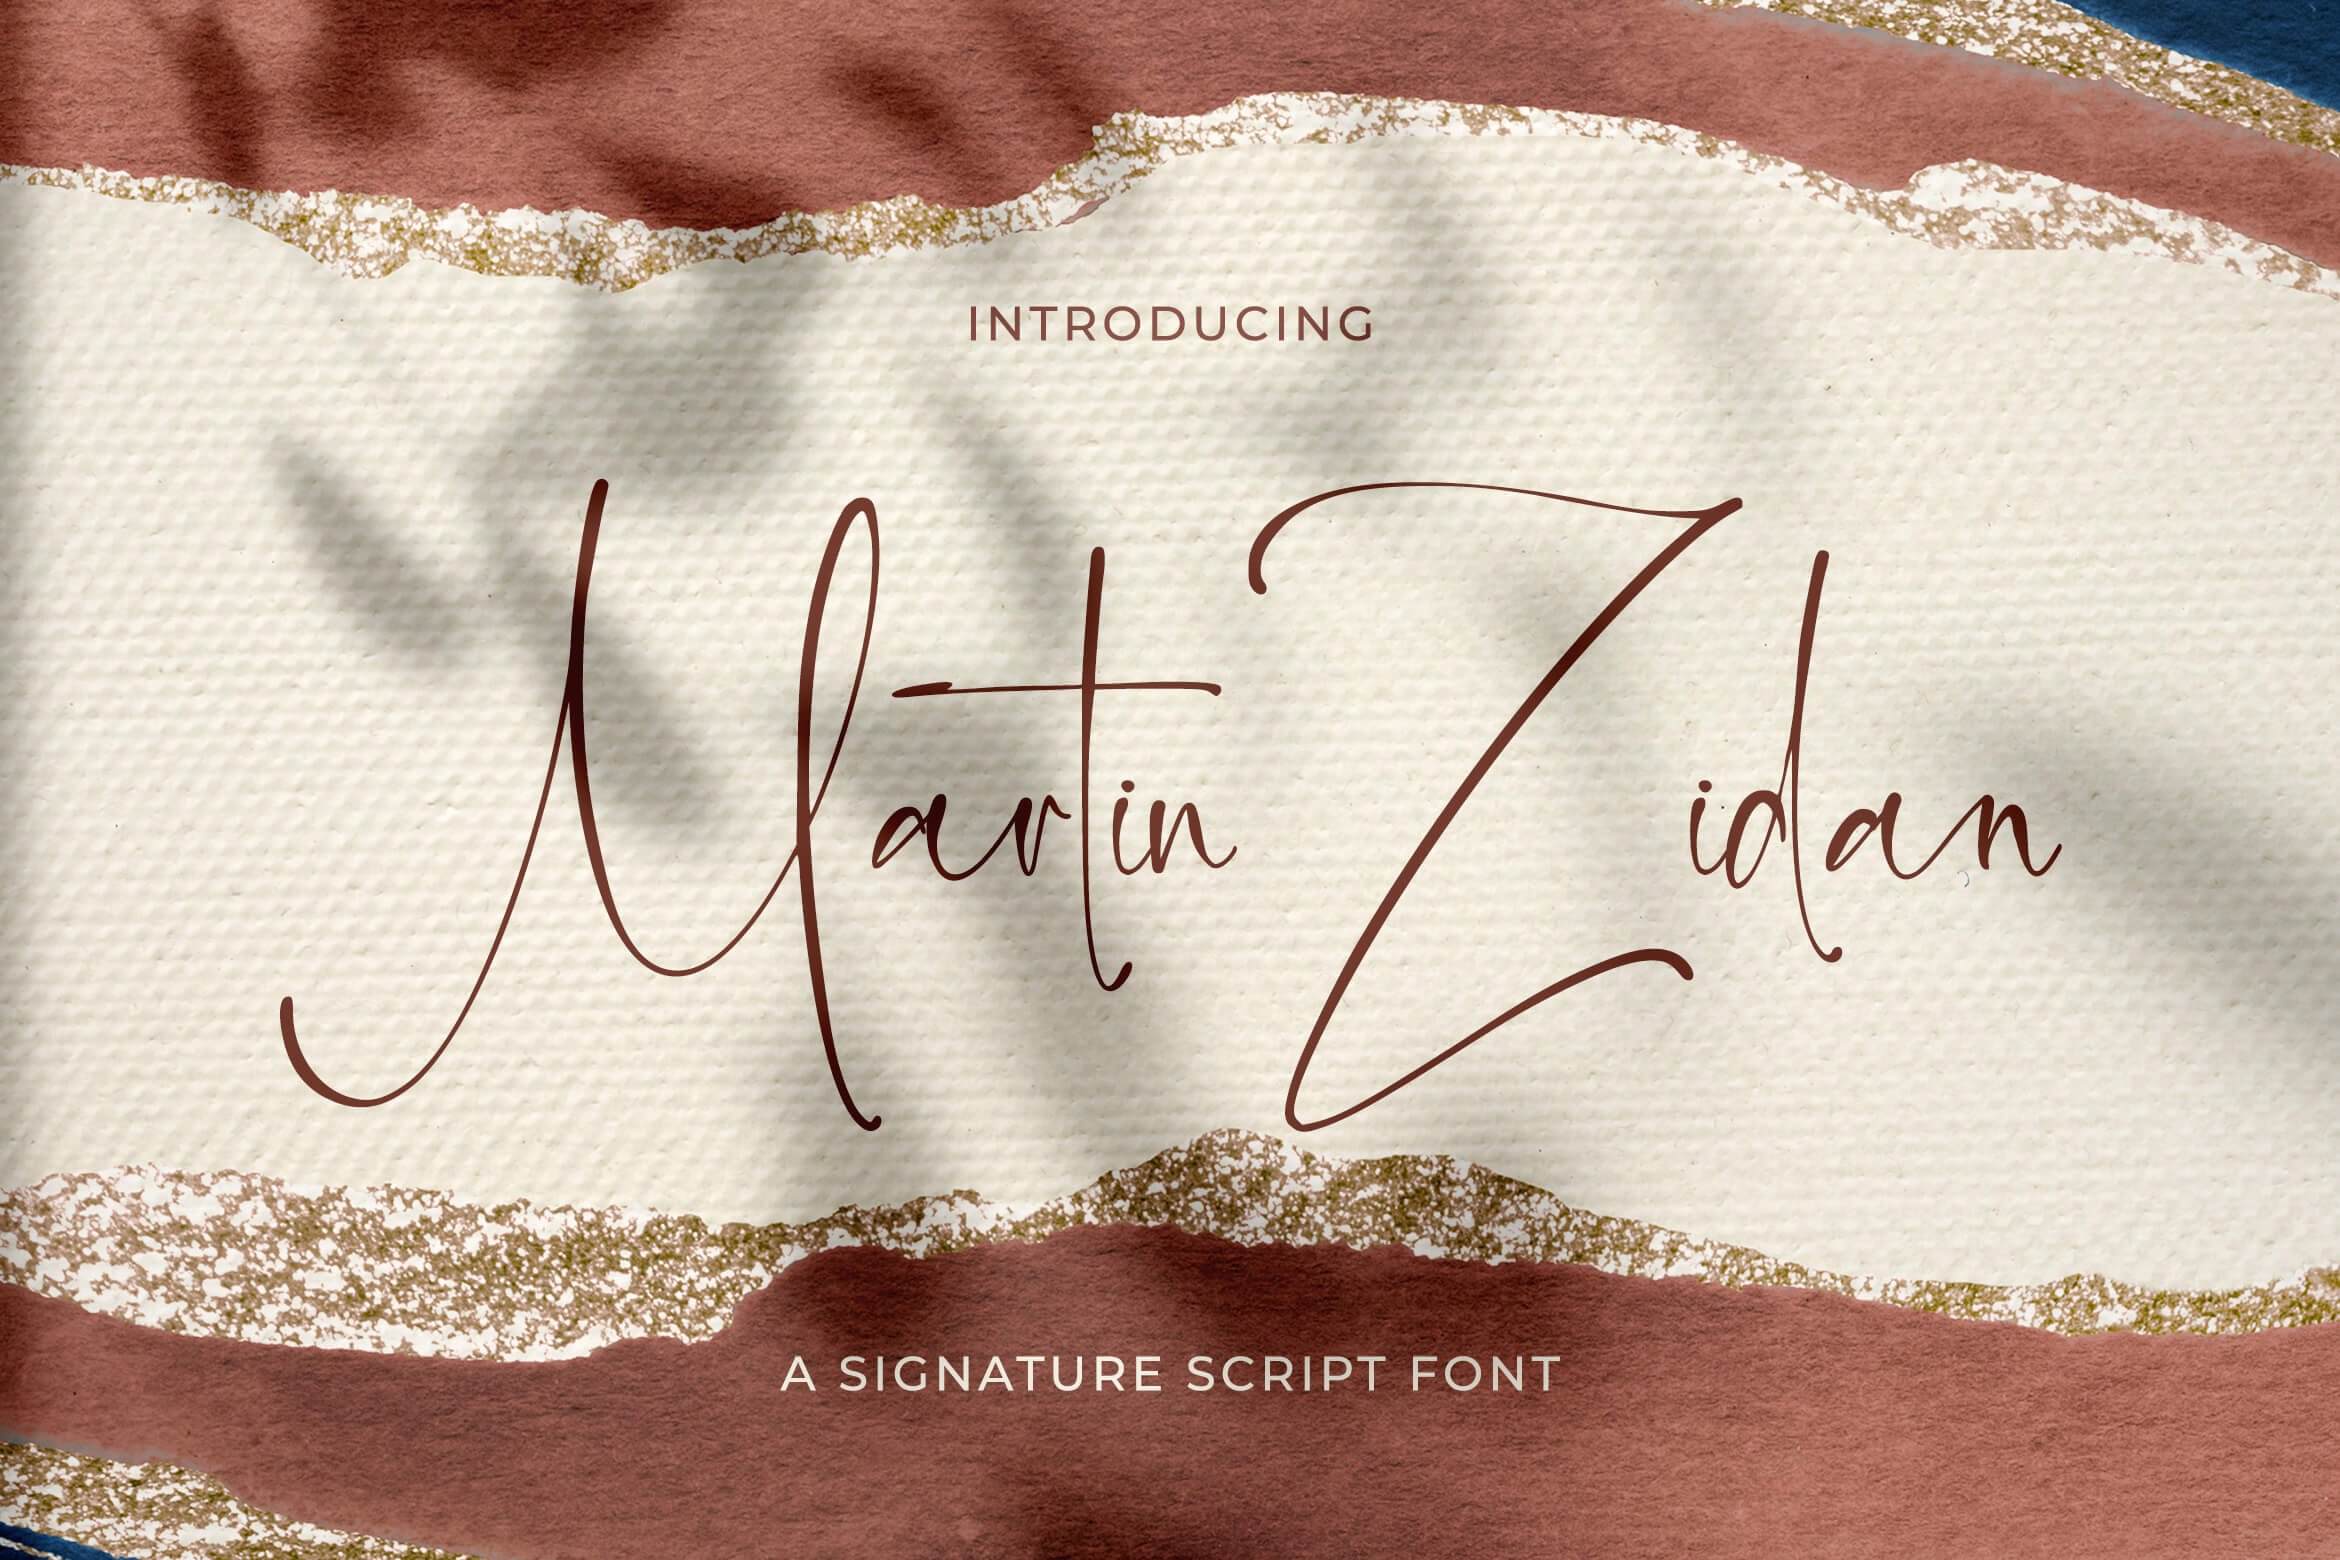 Martin Zidan - Signature Script Font cover image.